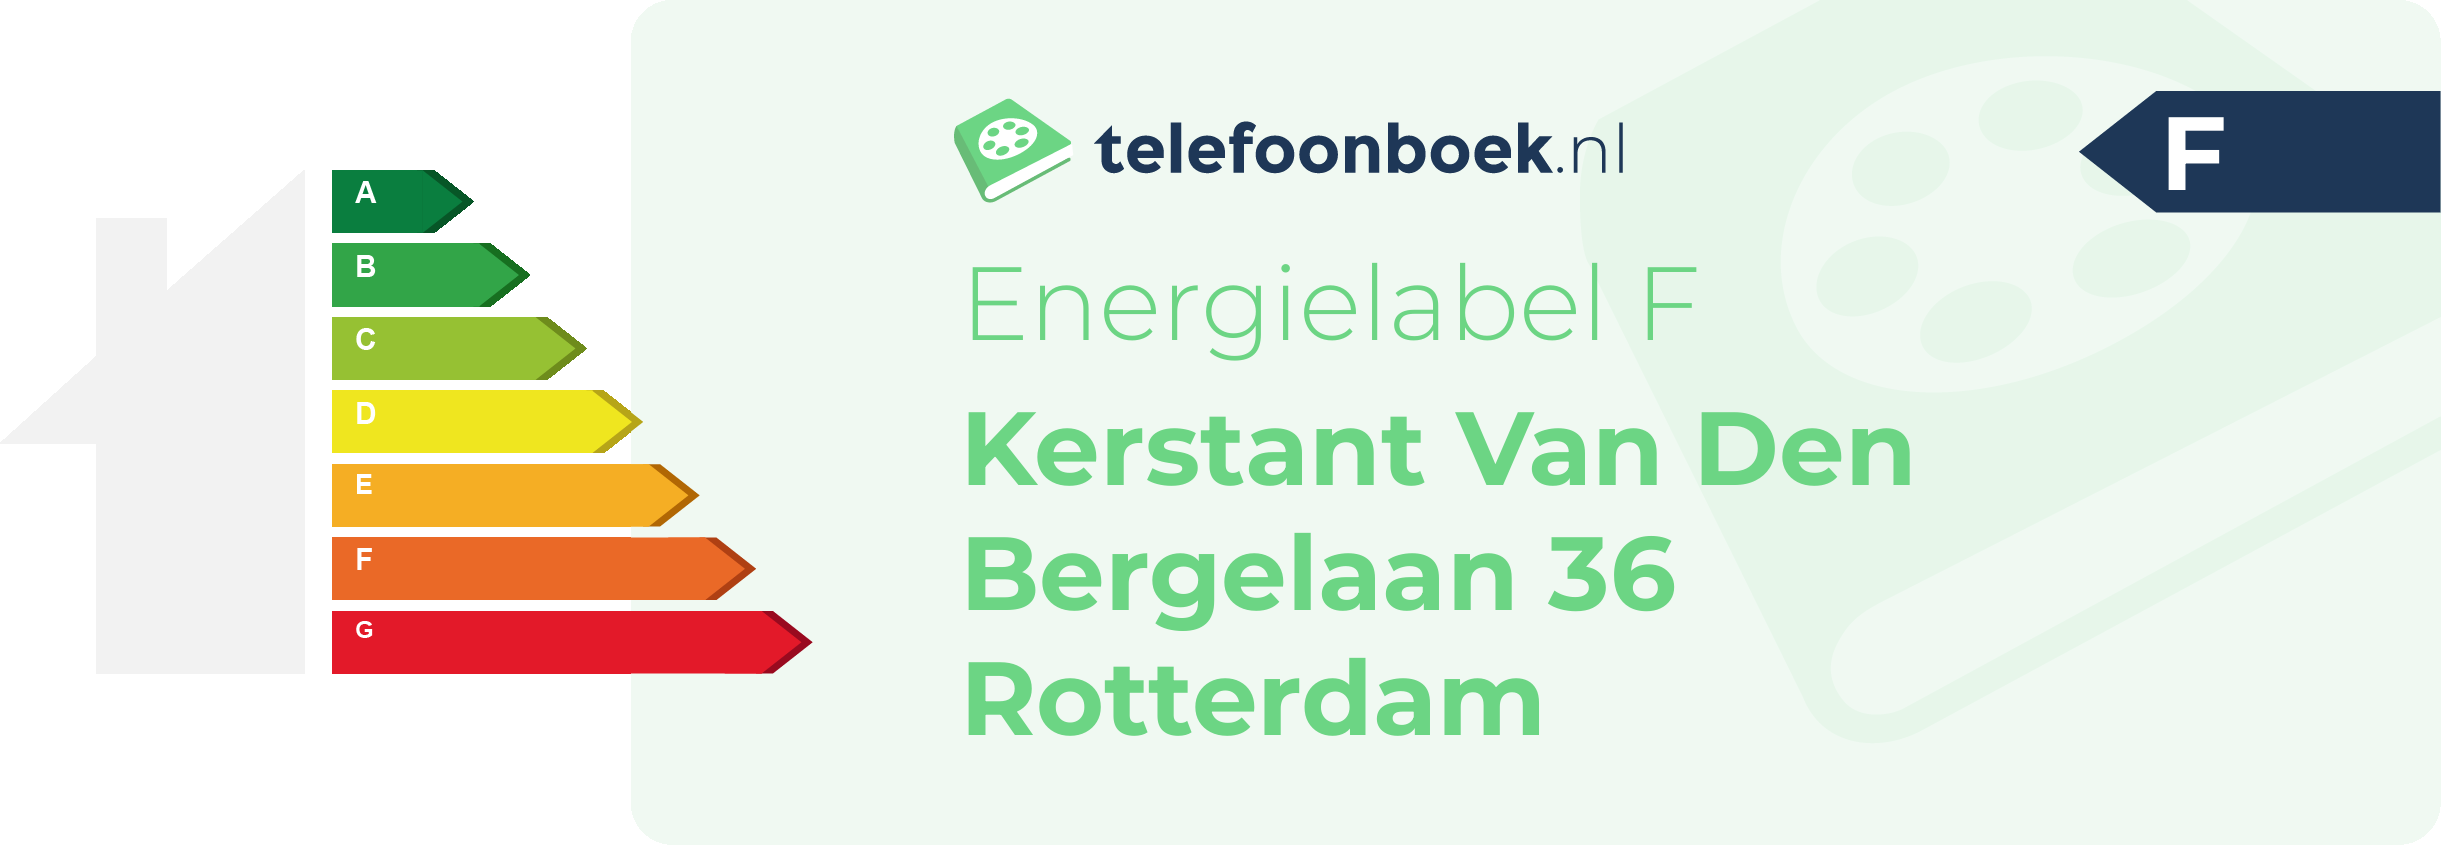 Energielabel Kerstant Van Den Bergelaan 36 Rotterdam